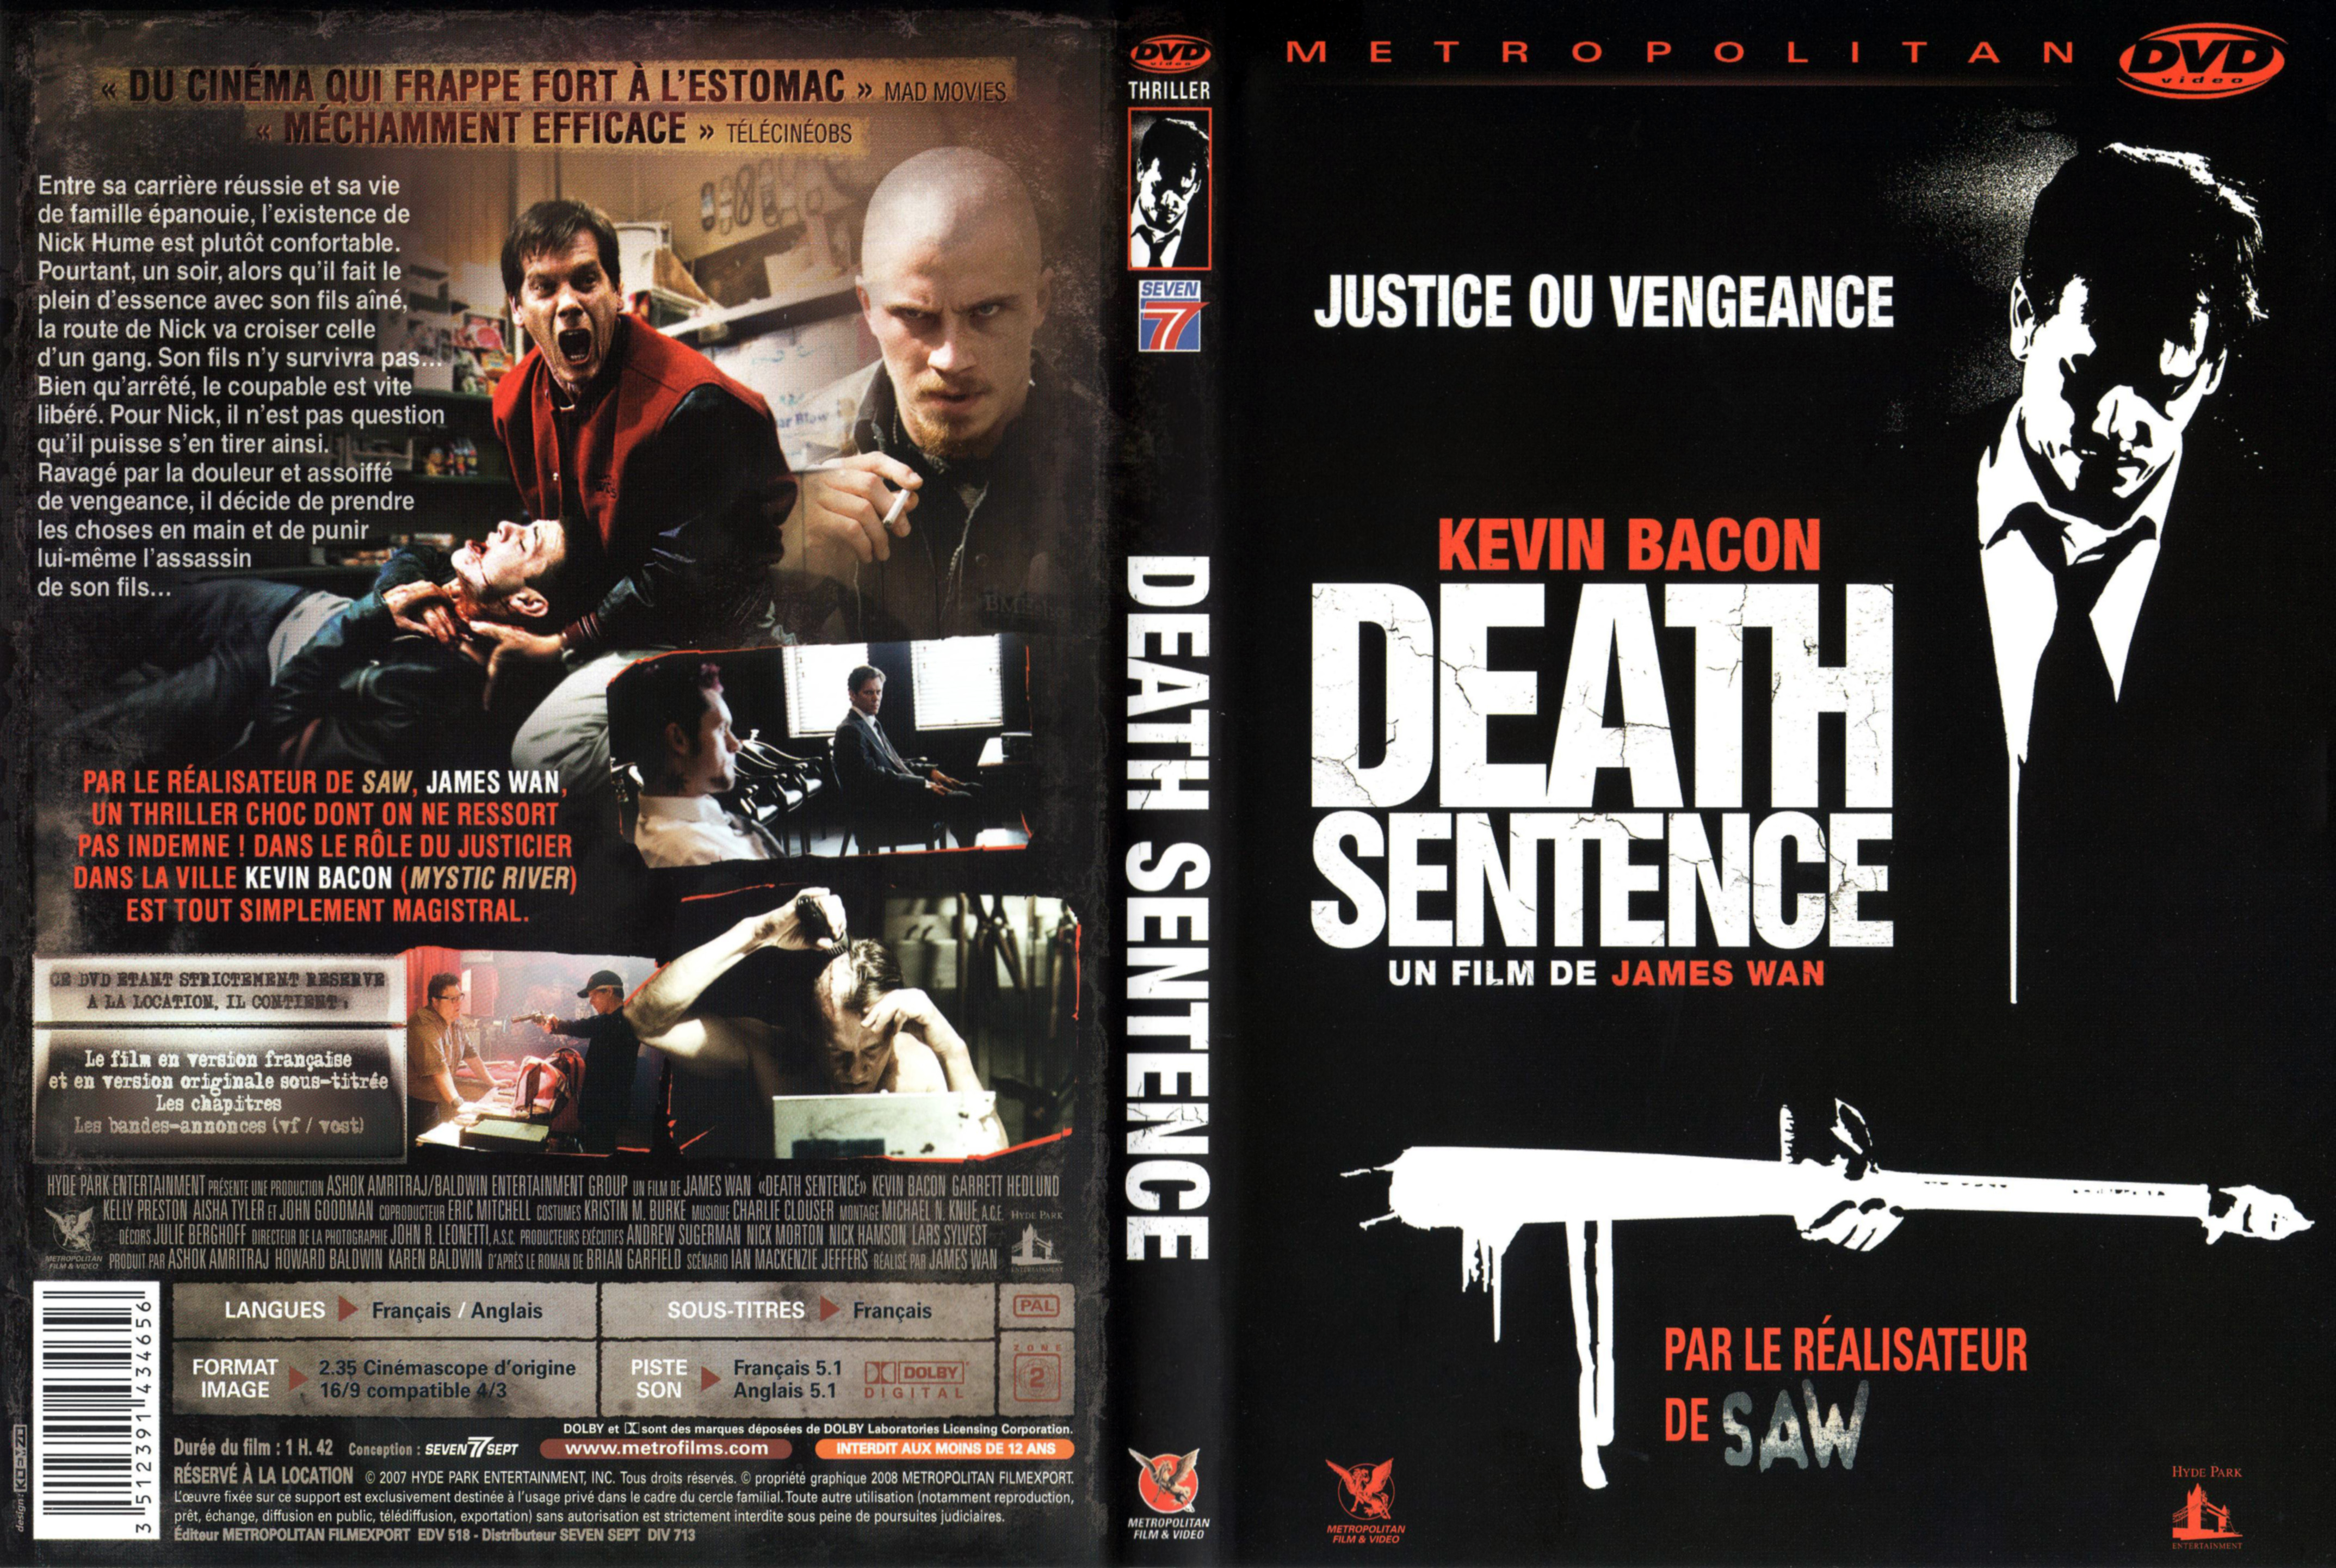 Jaquette DVD Death sentence